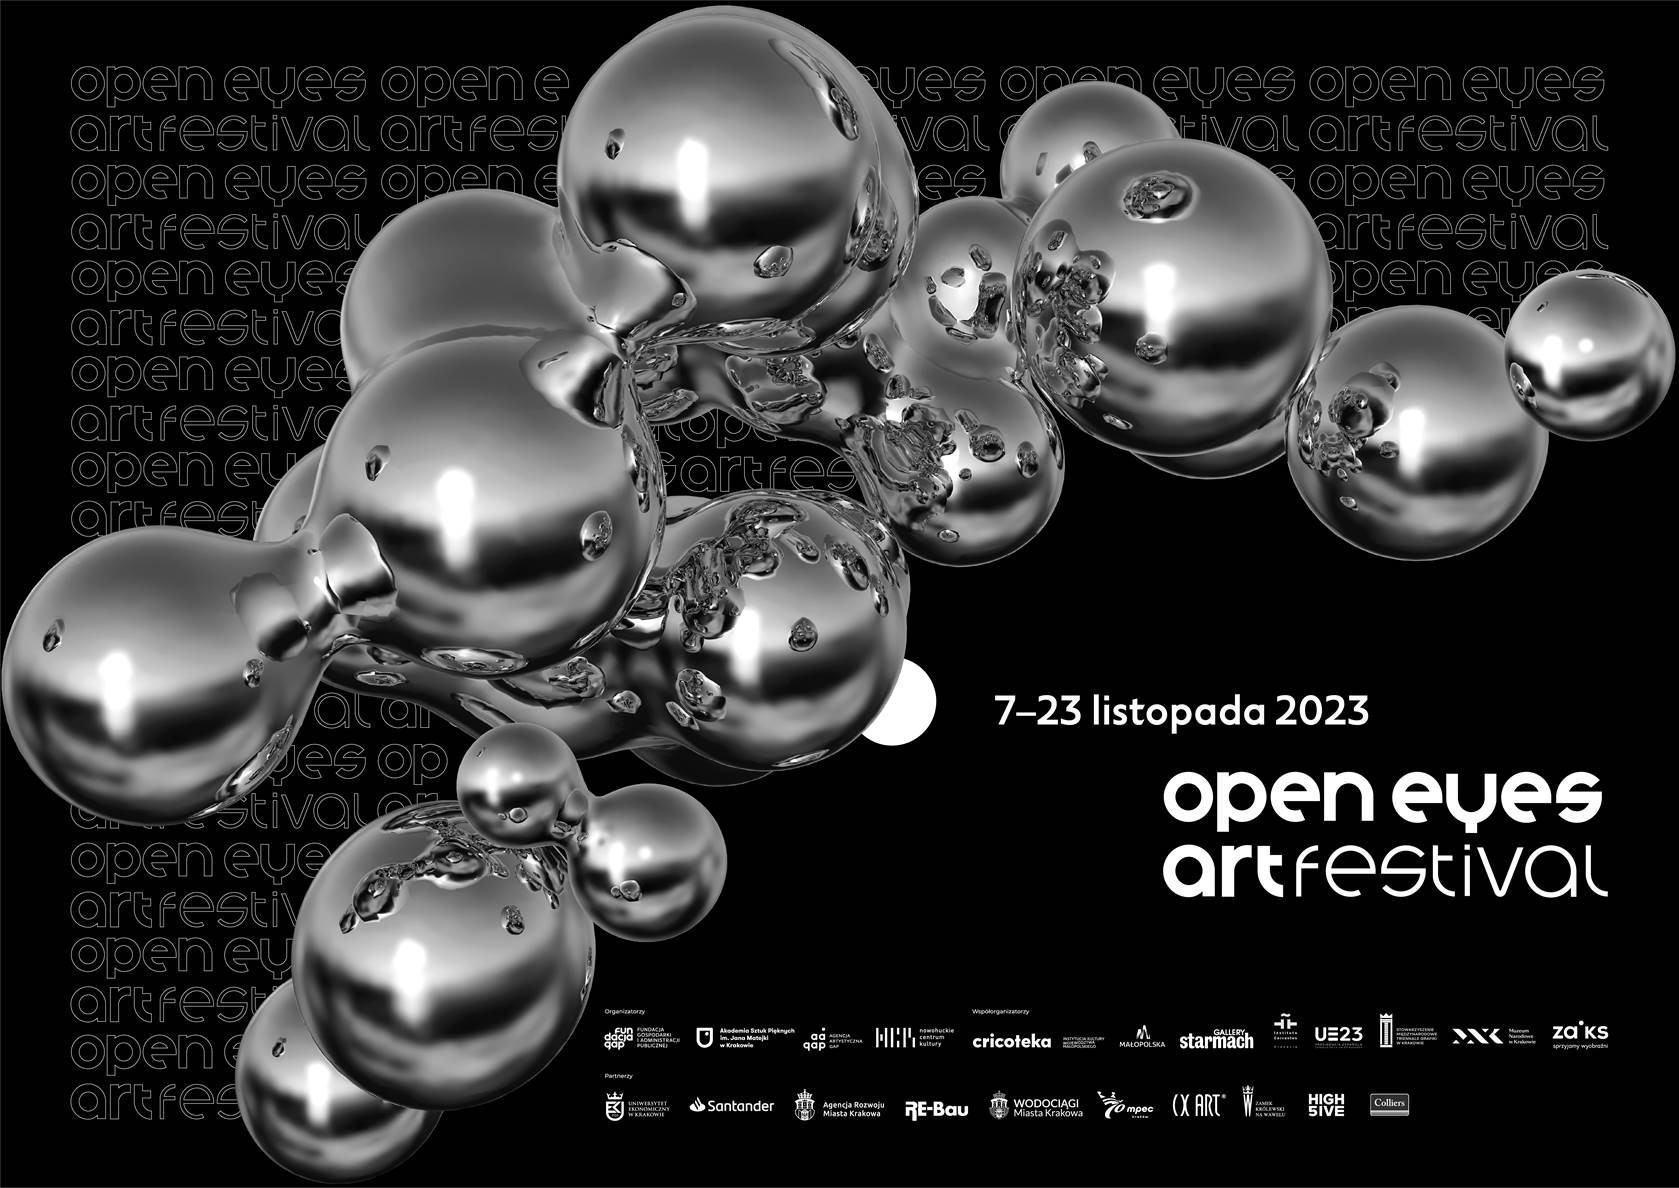 Open Eyes Art Festival